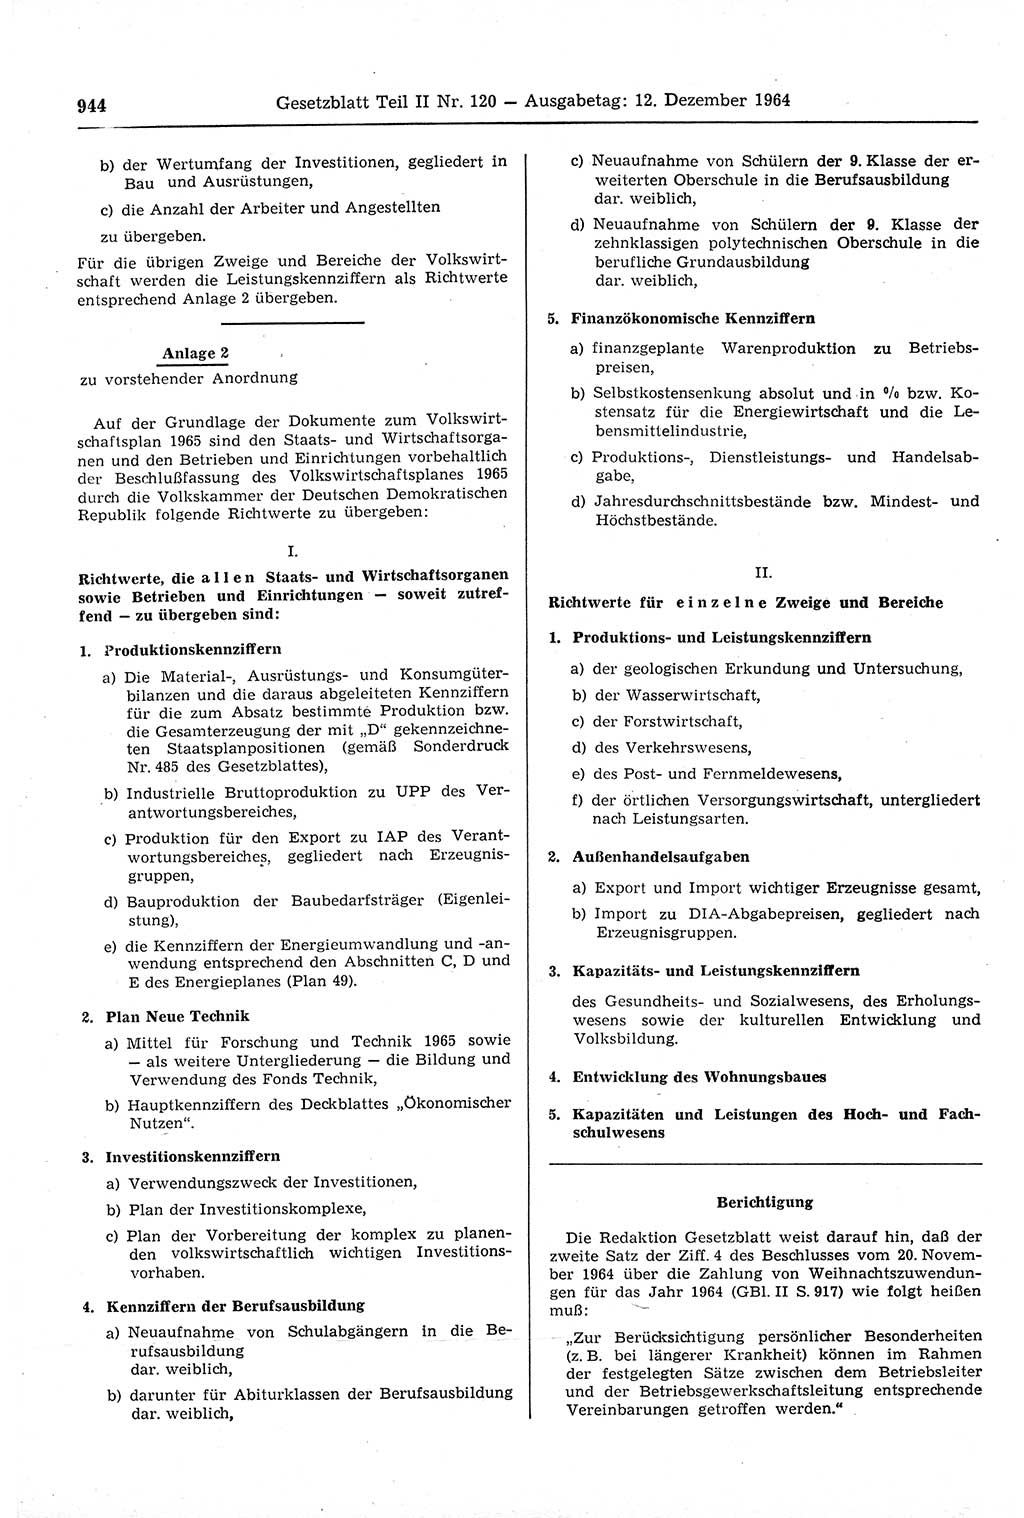 Gesetzblatt (GBl.) der Deutschen Demokratischen Republik (DDR) Teil ⅠⅠ 1964, Seite 944 (GBl. DDR ⅠⅠ 1964, S. 944)